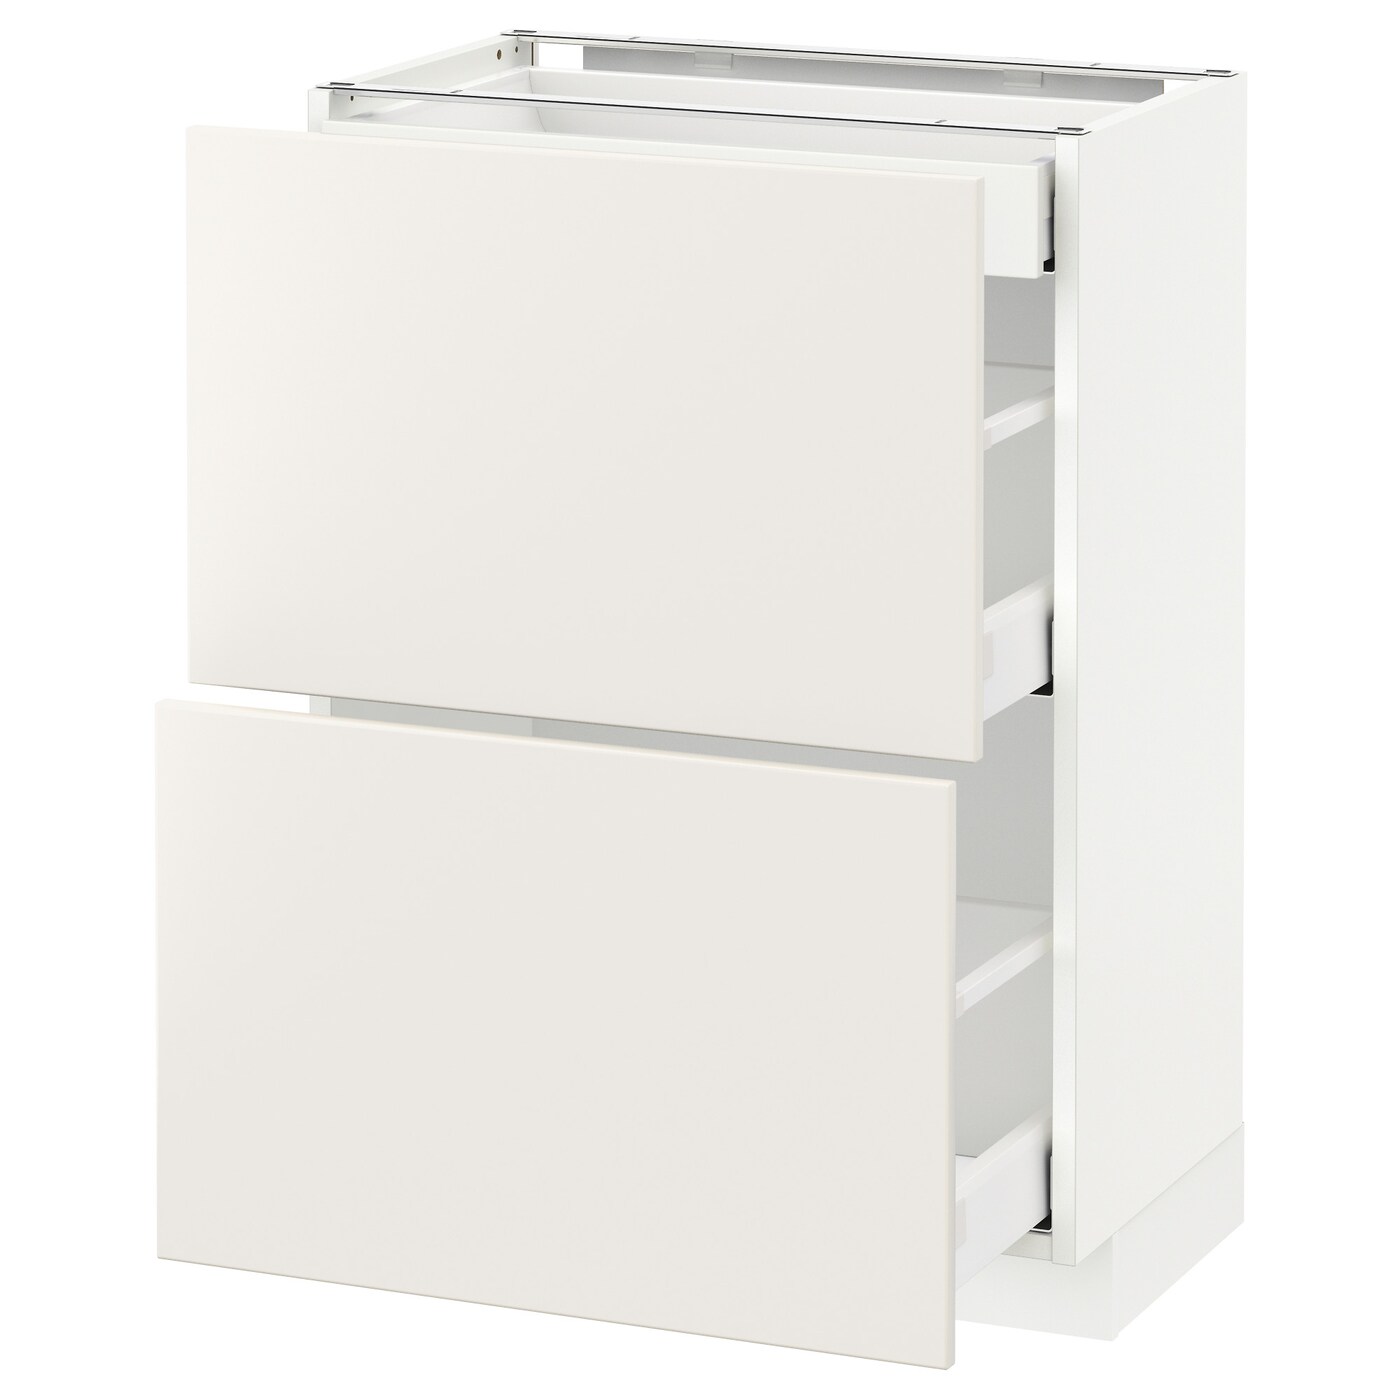 Напольный кухонный шкаф  - IKEA METOD MAXIMERA, 88x39,2x60см, белый, МЕТОД МАКСИМЕРА ИКЕА